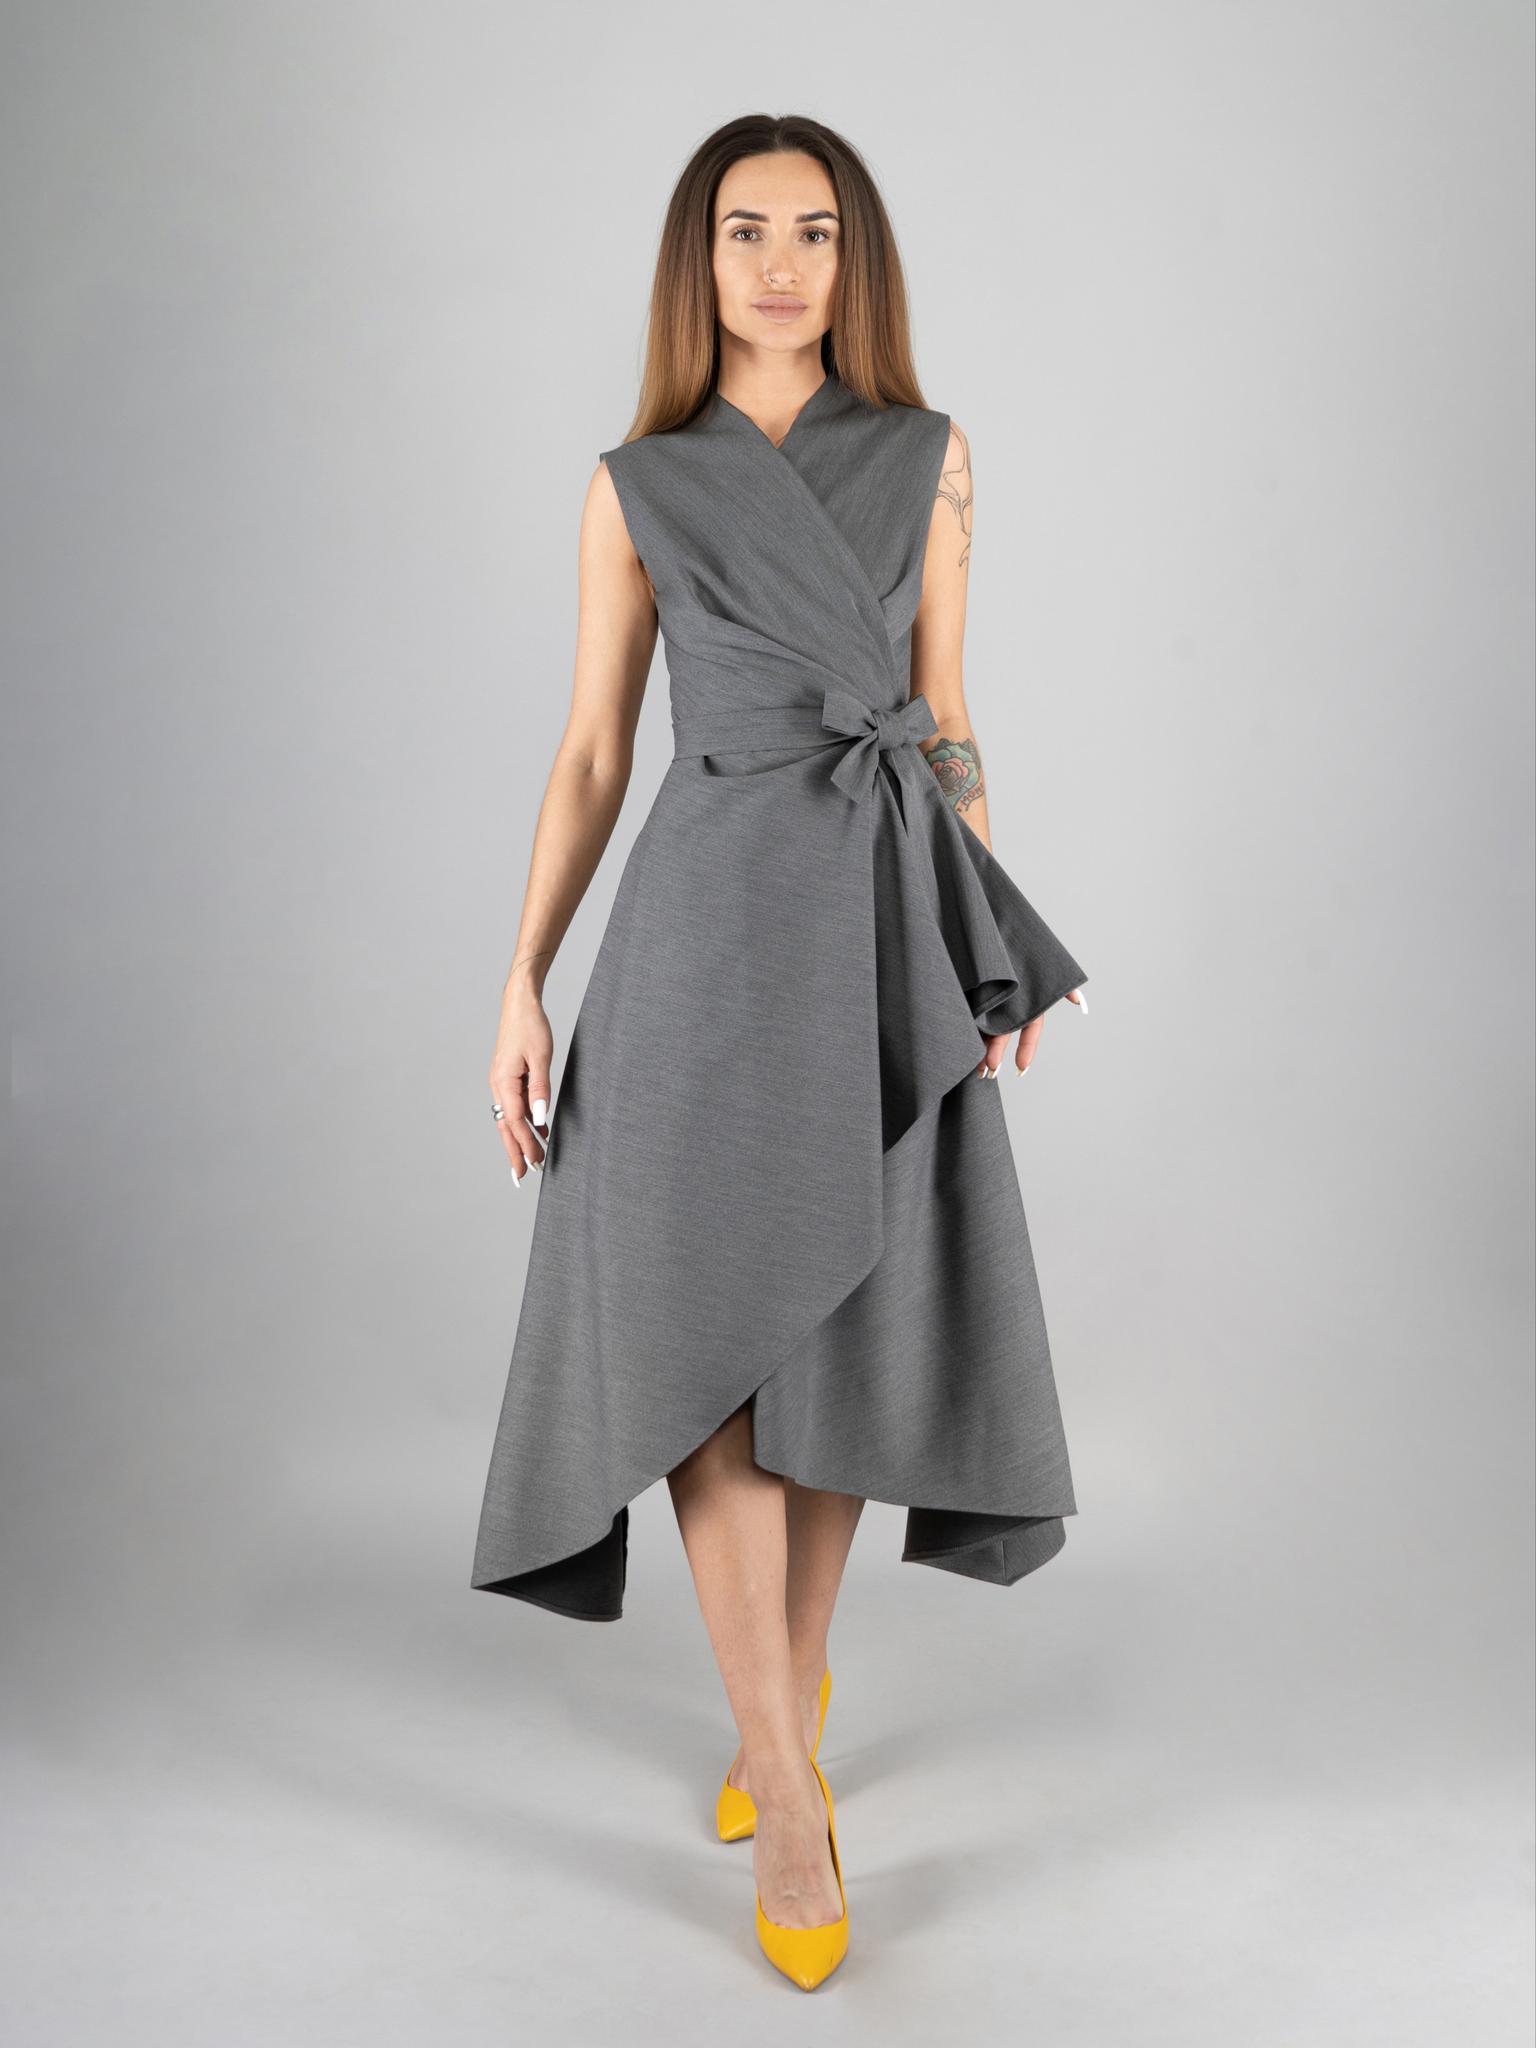 Купить женское платье без рукавов в интернет-магазине | sapsanmsk.ru